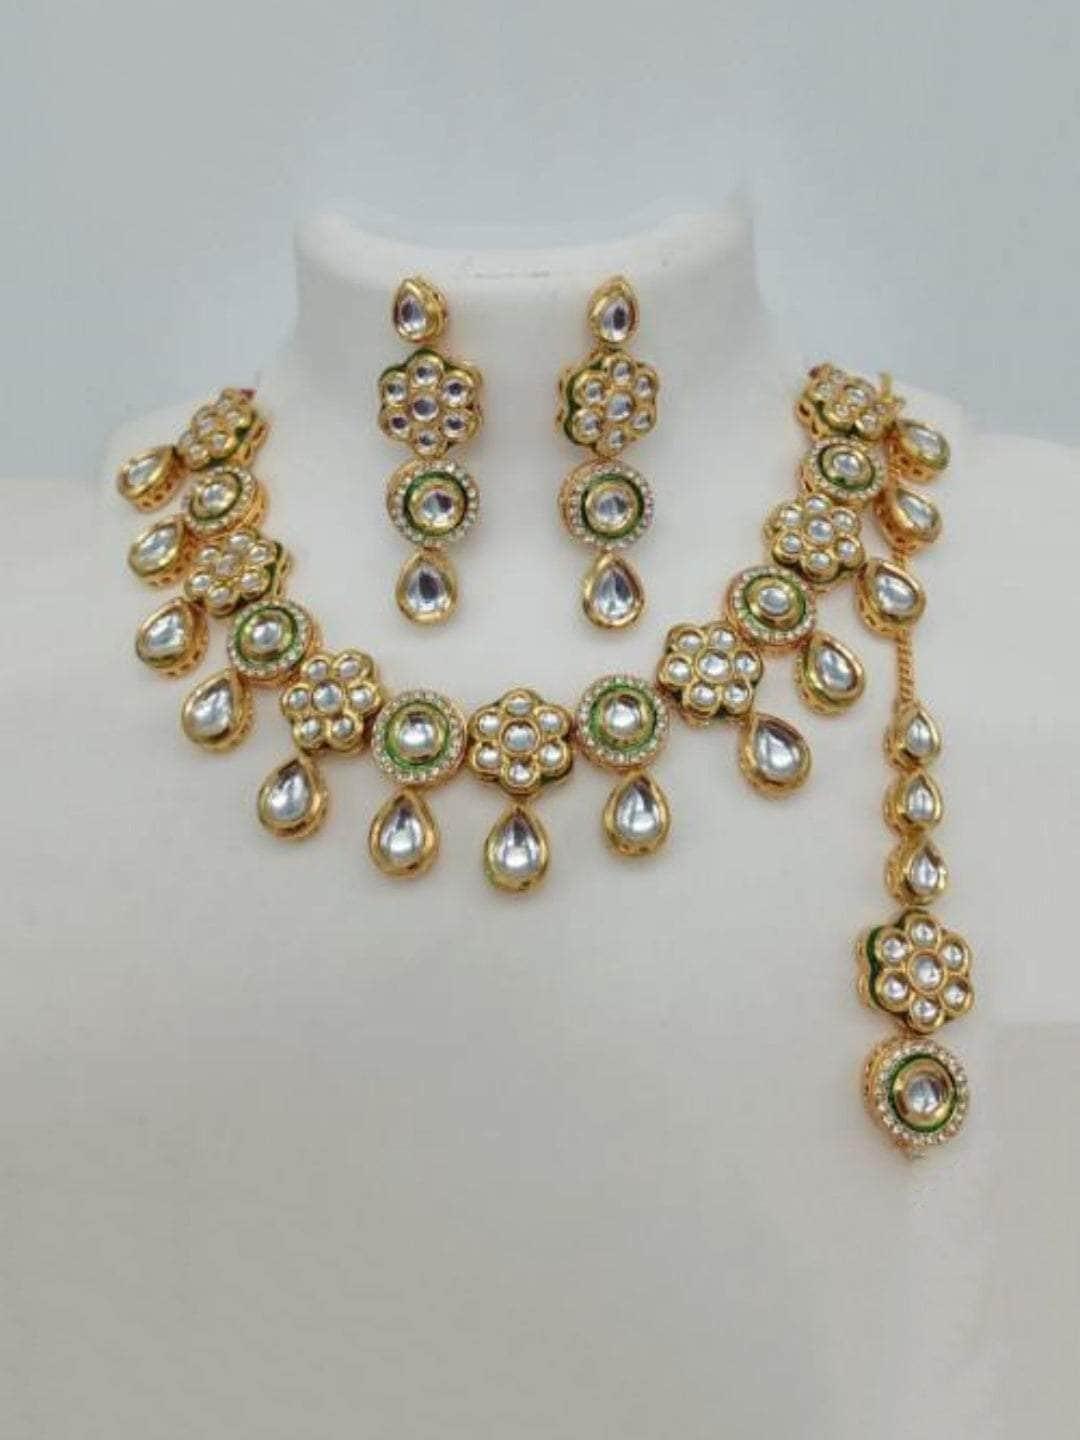 Ishhaara Flower Motif Kundan Ad Necklace Earring And Teeka Set